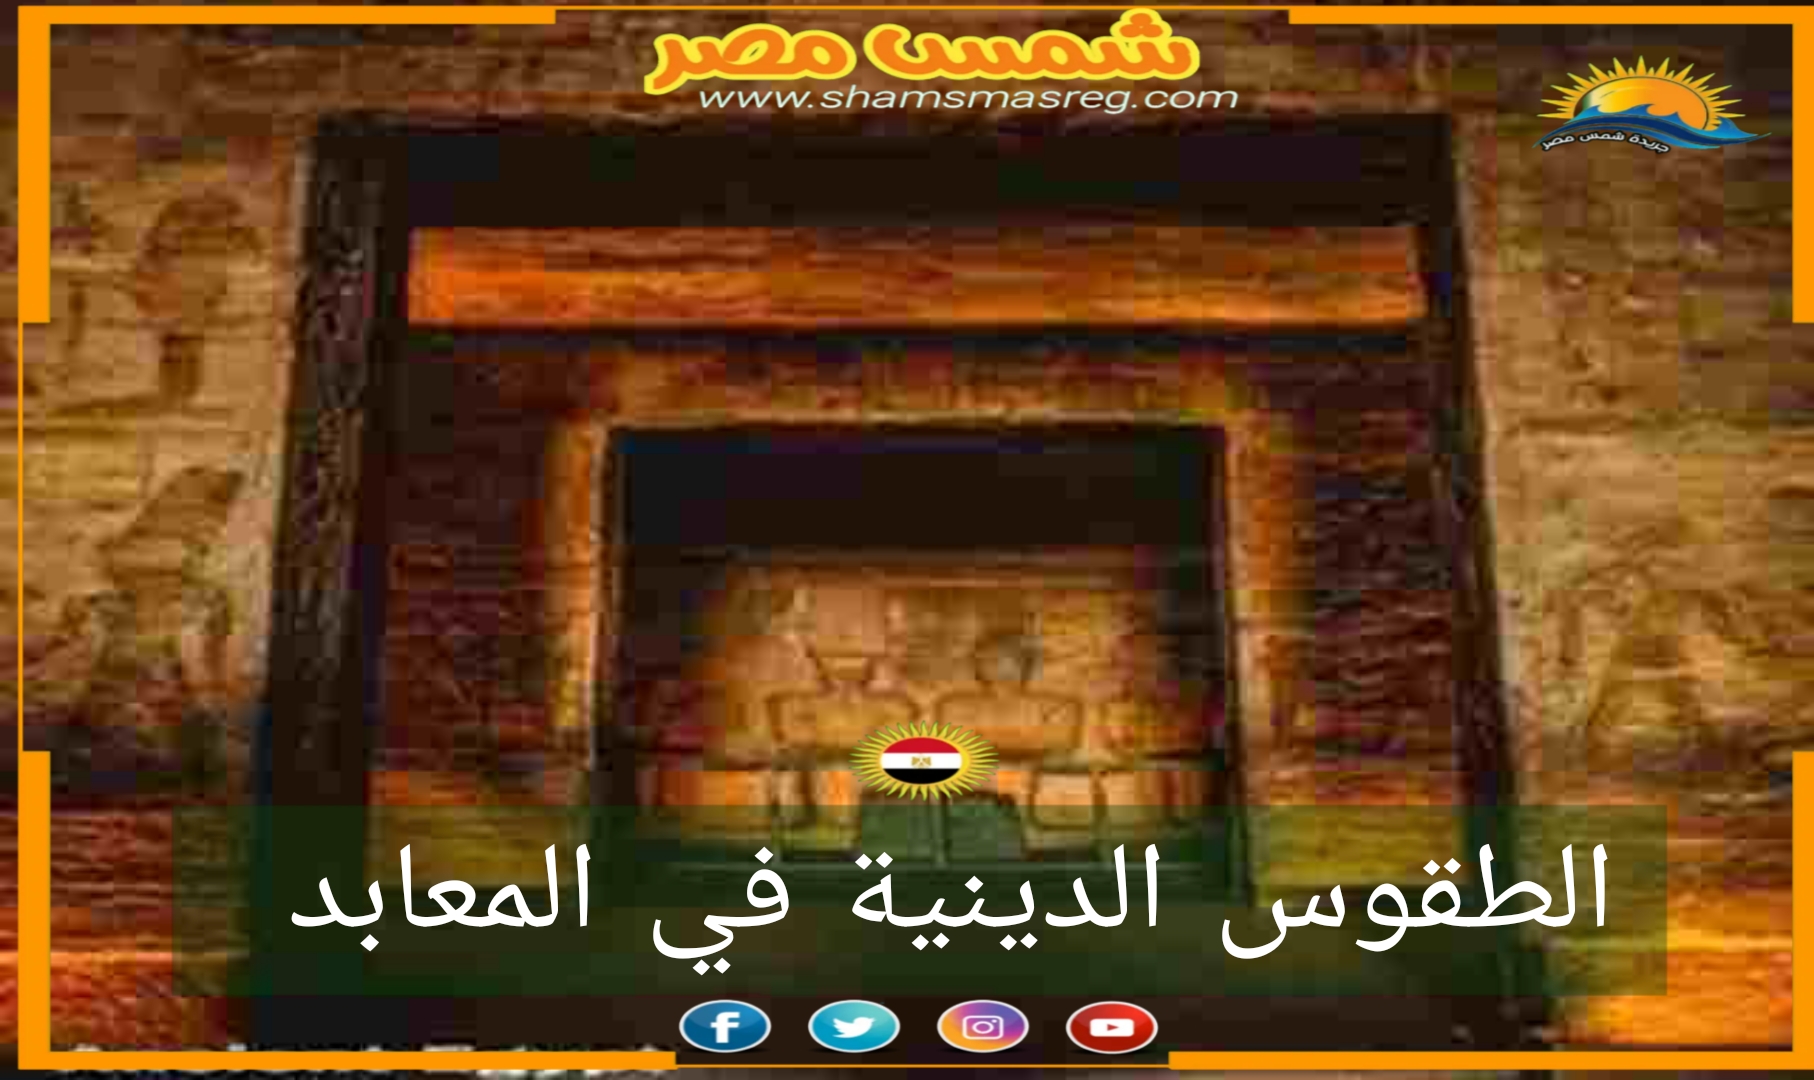 شمس مصر / الطقوس الدينية في المعابد